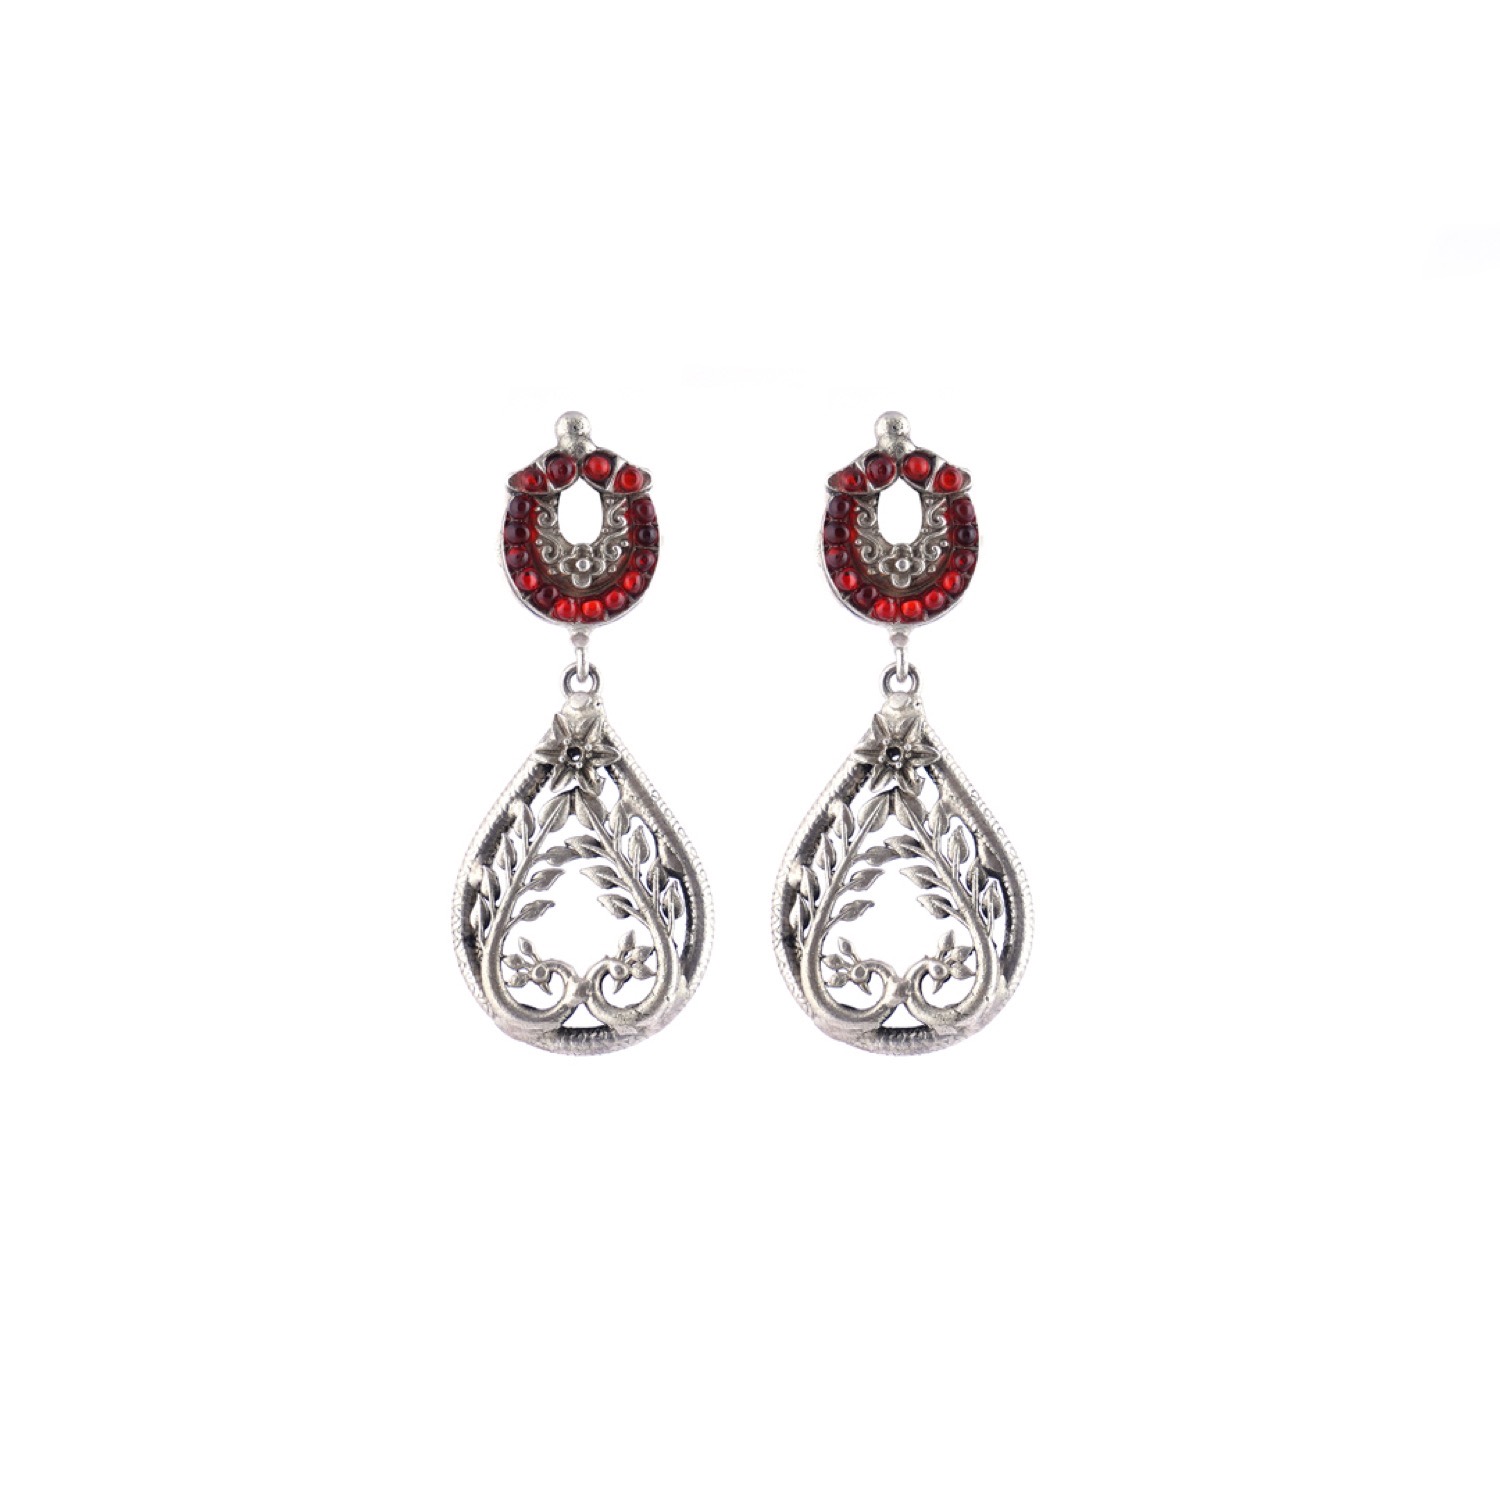 varam_earrings_102022_red_stone_stud_with_peacock_dangling_silver_earrings-1